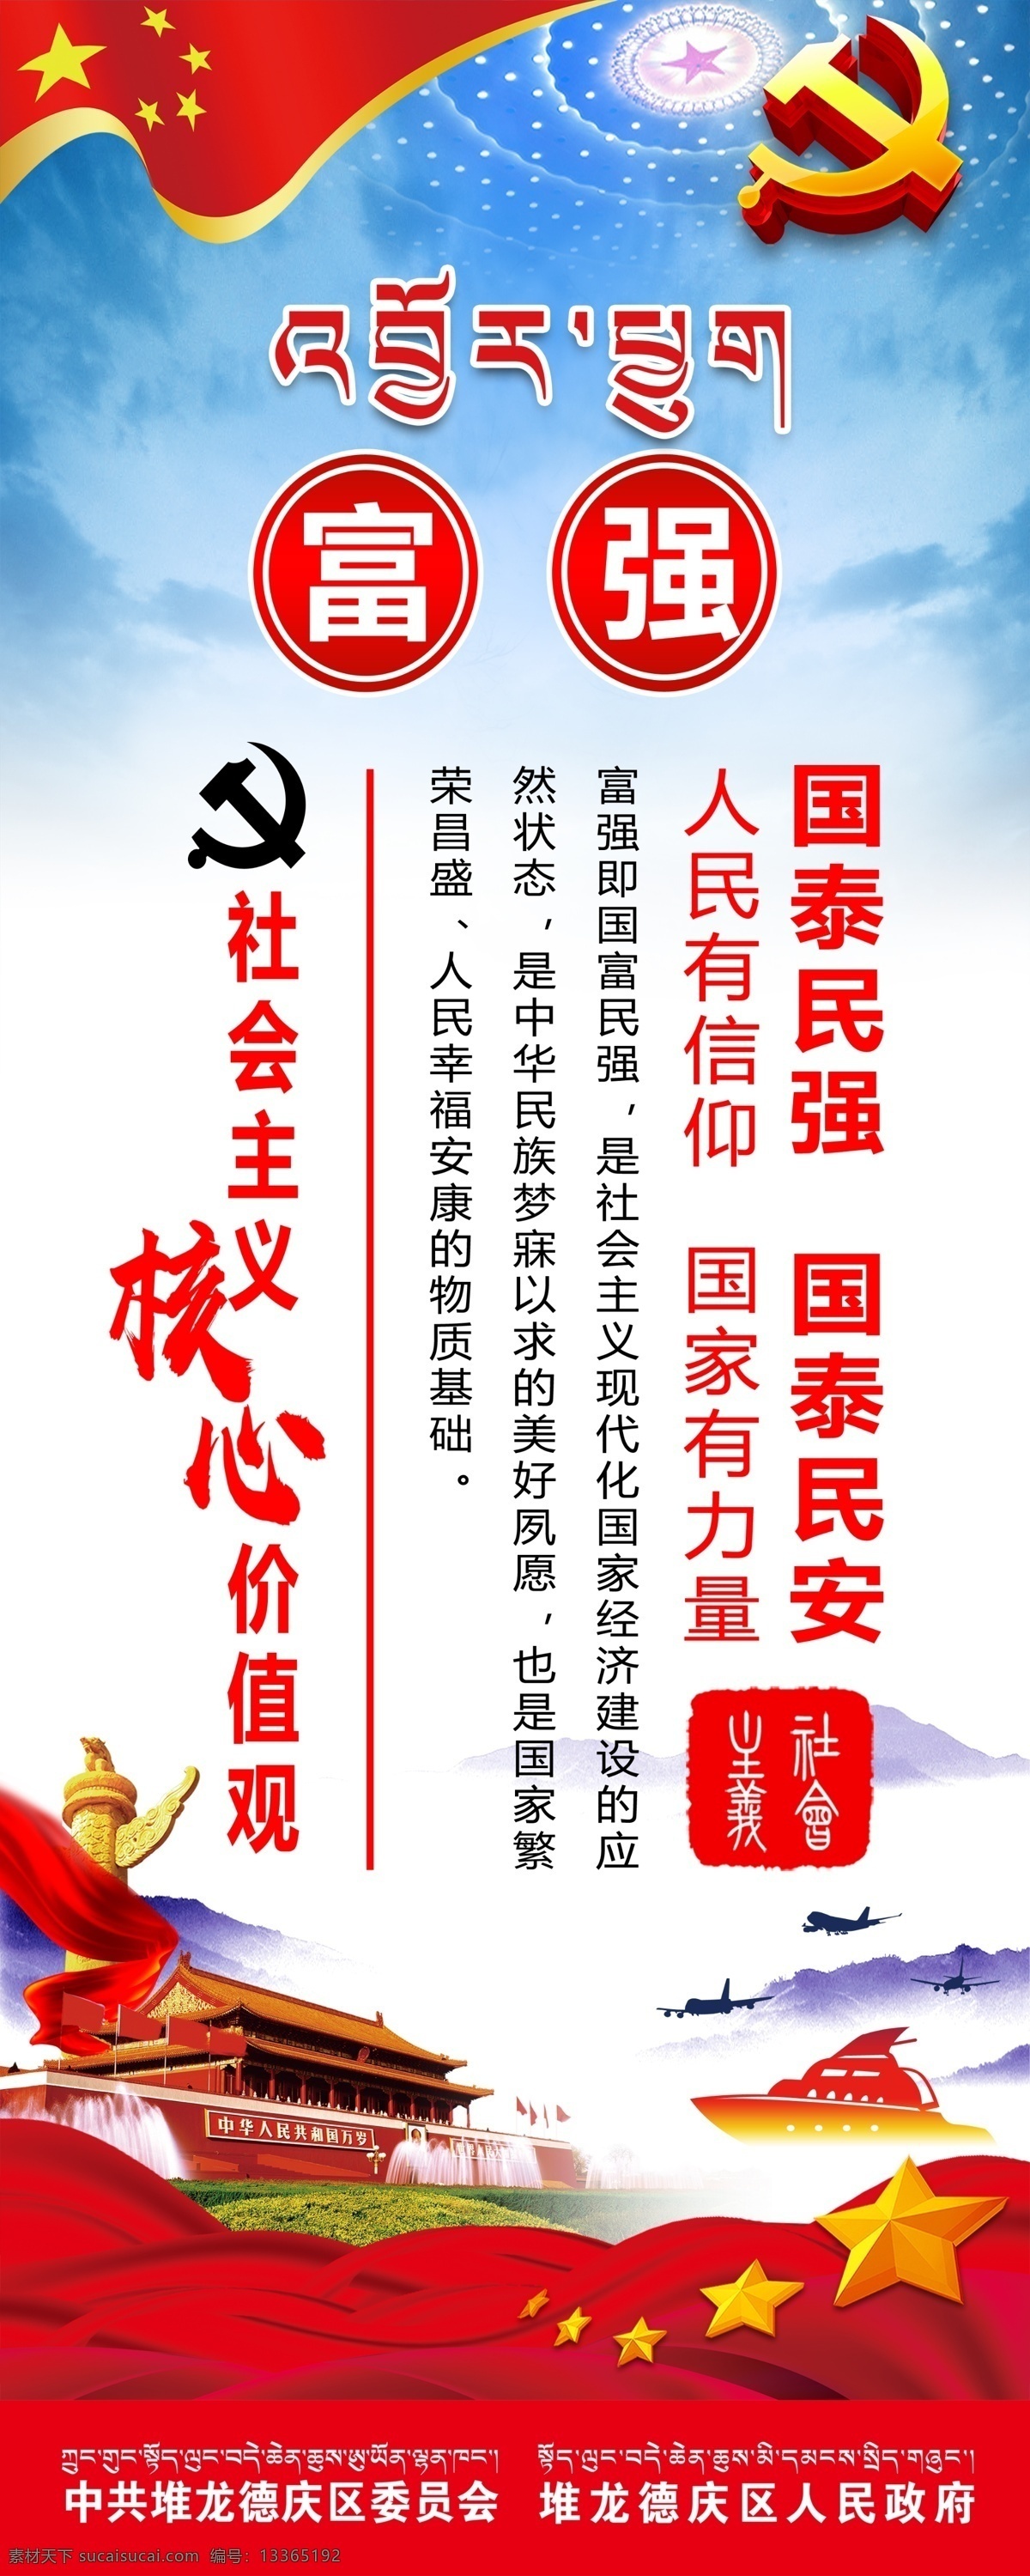 核心价值观 社会主义 富强 国泰民强 国泰民安 天安门 华表 党徵 价值观 海报 喷绘